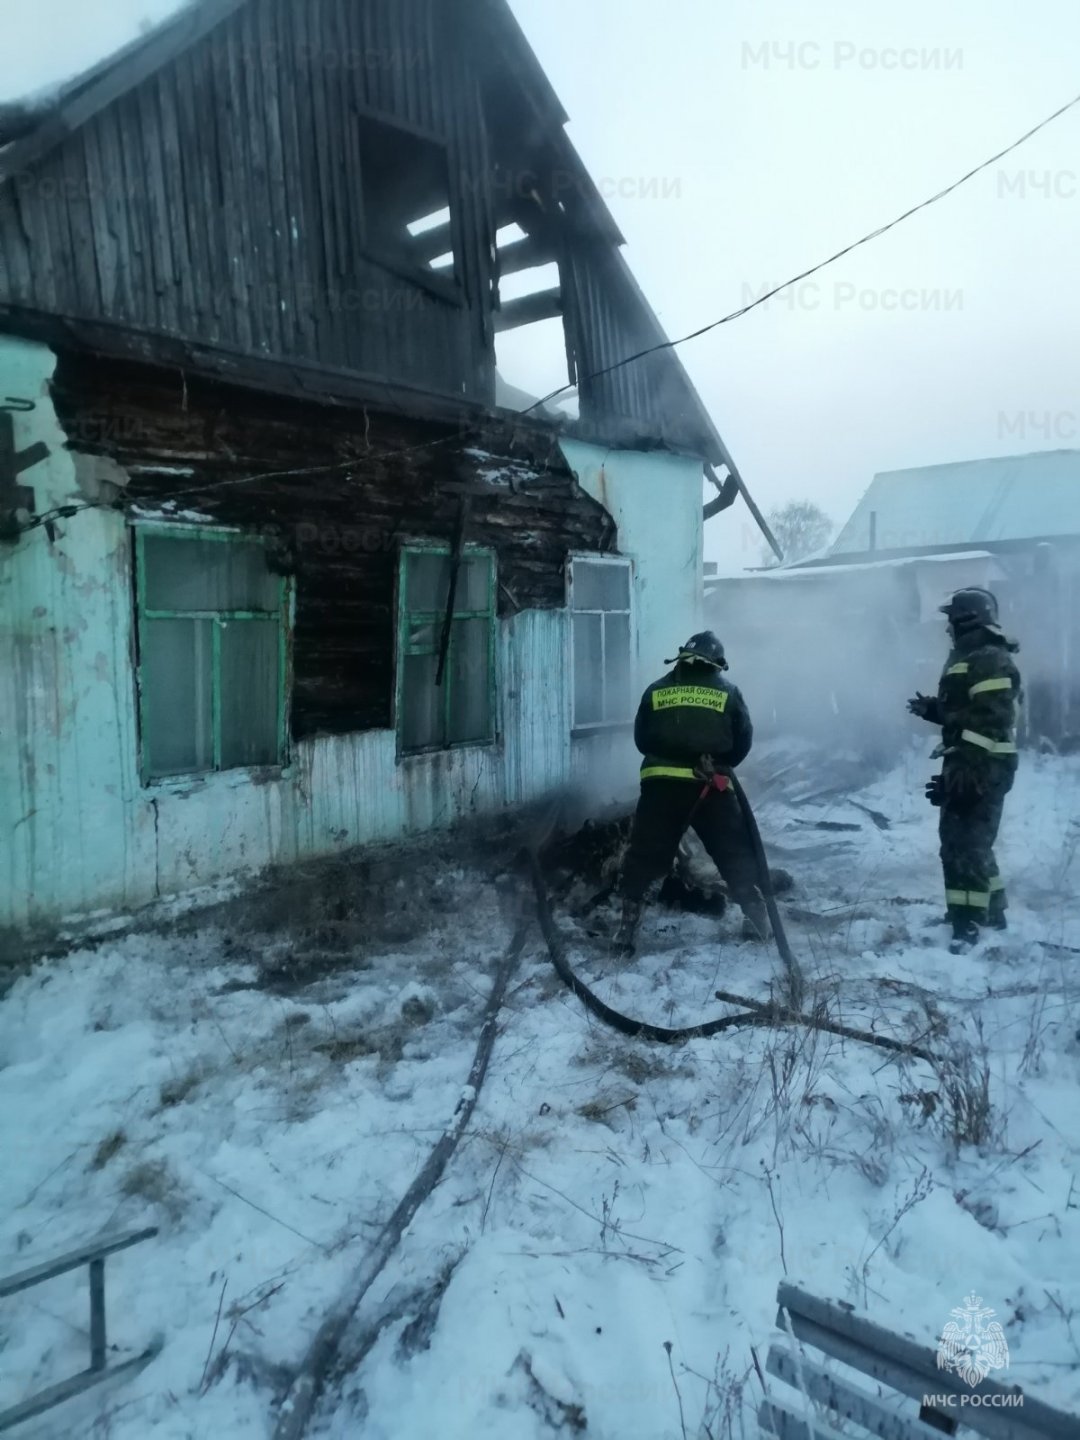 Пожар в Ольхонском районе